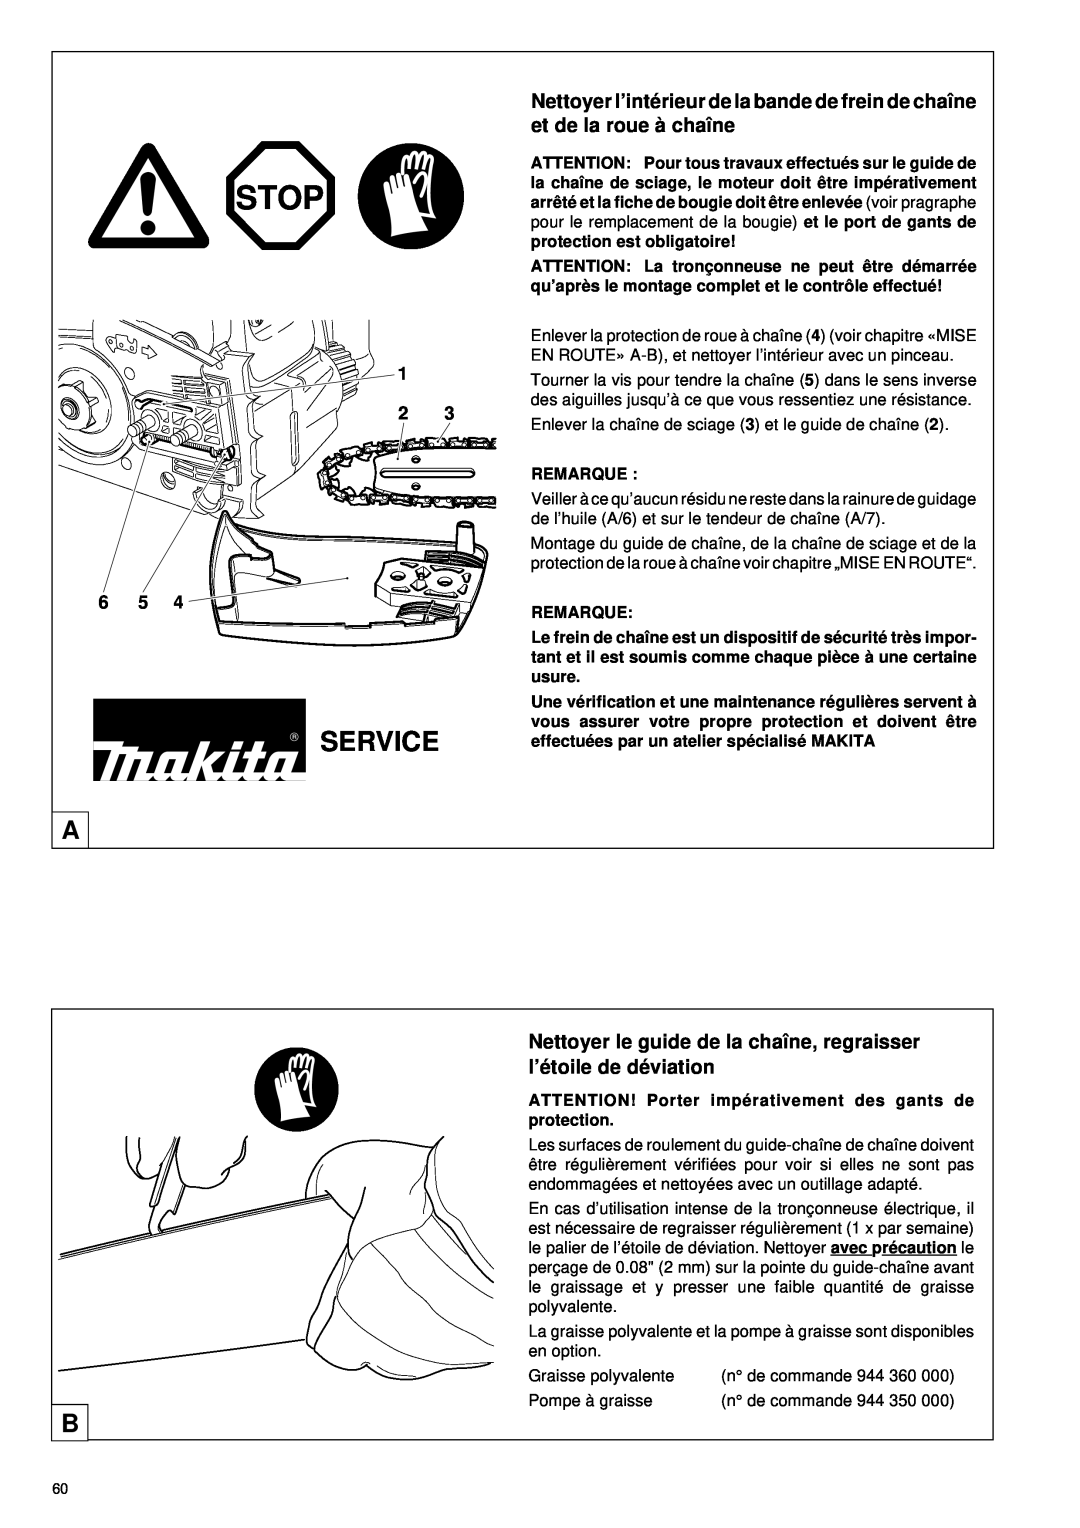 Makita DCS34 manual Nettoyer le guide de la chaîne, regraisser l’é toile de dé viation, Stop, Service, Remarque 